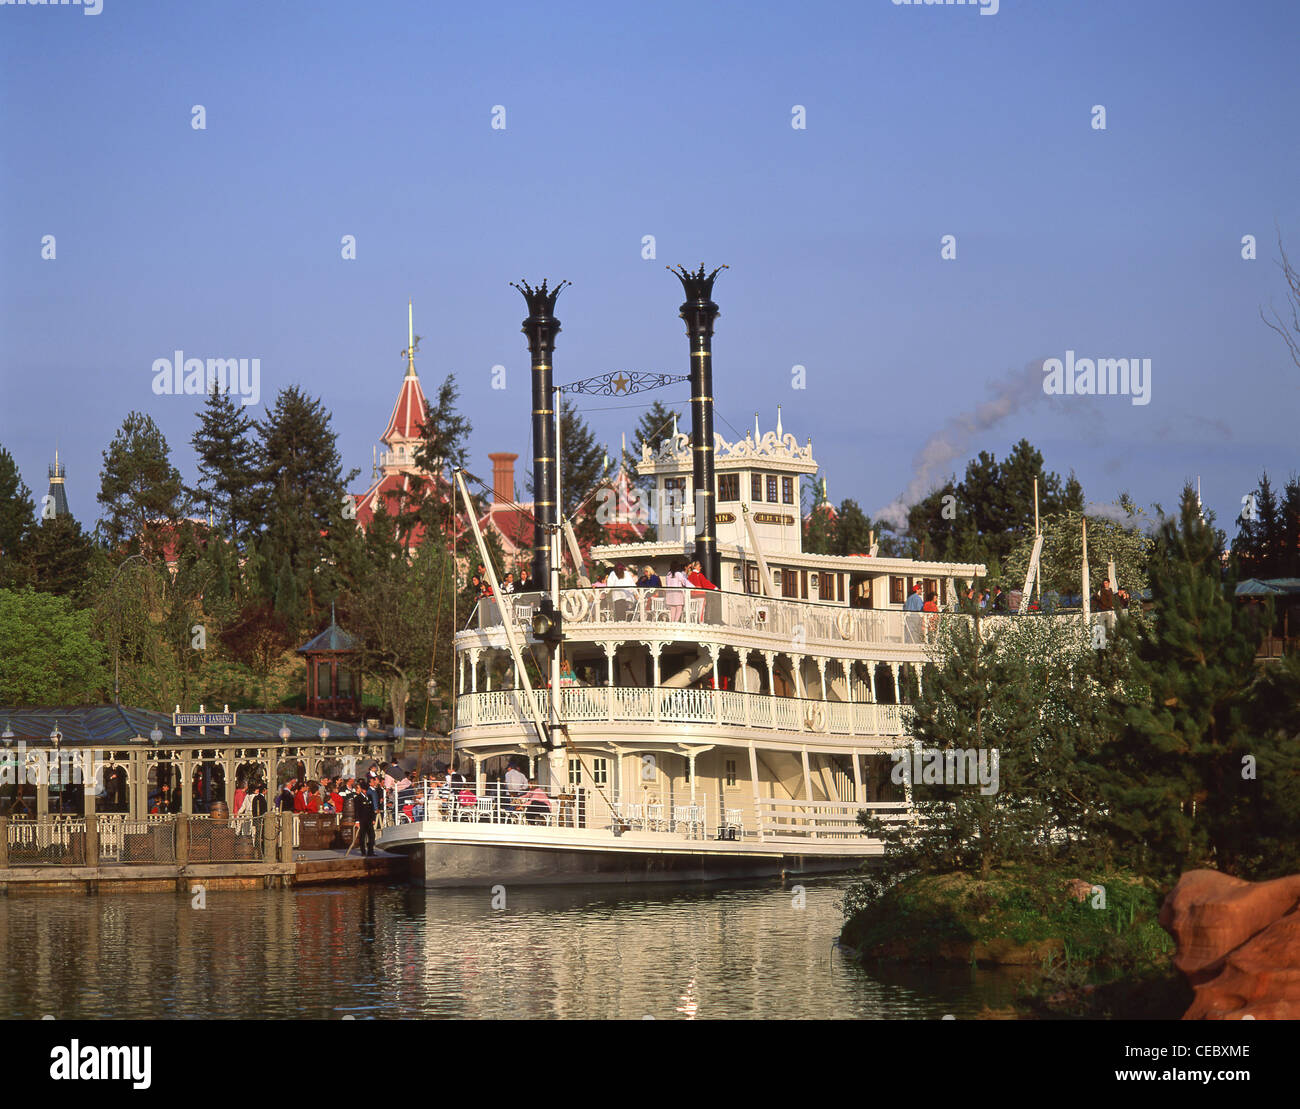 Mark Twain paddle steamer, Frontierland, Disneyland Paris theme park, Marne-la-Vallée, Île-de-France, France Stock Photo